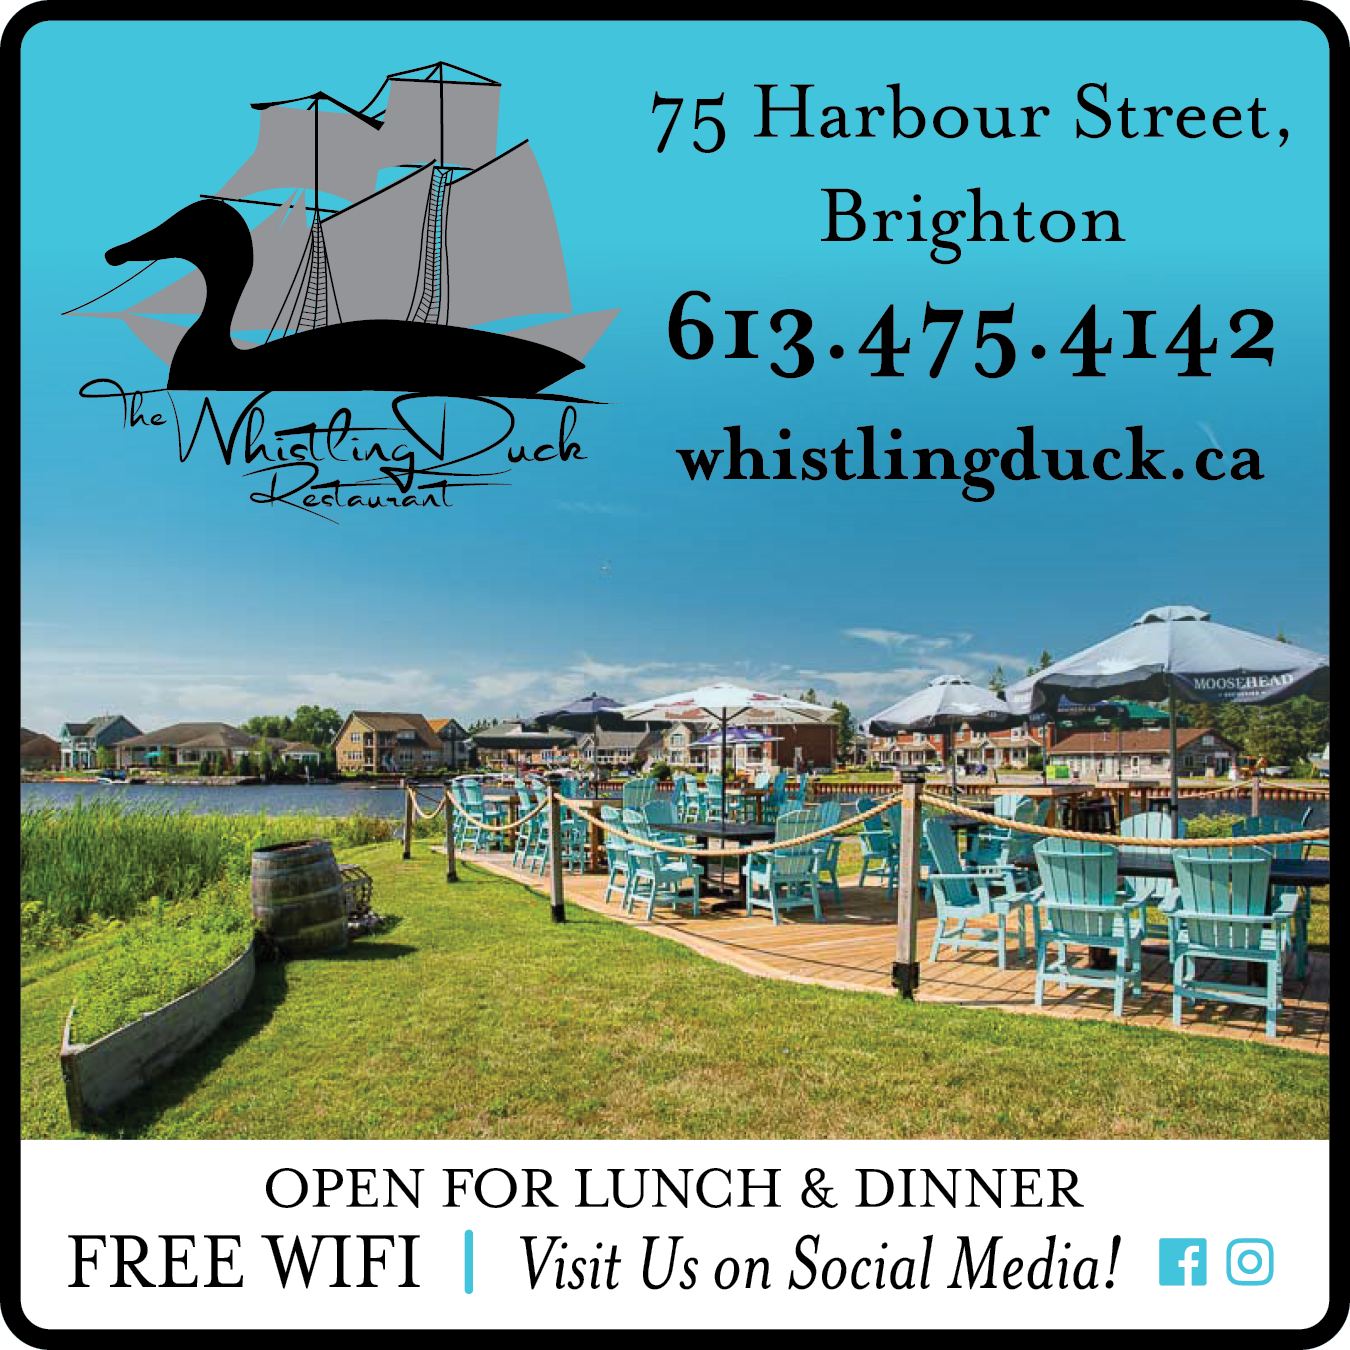 The Whistling Duck Restaurant